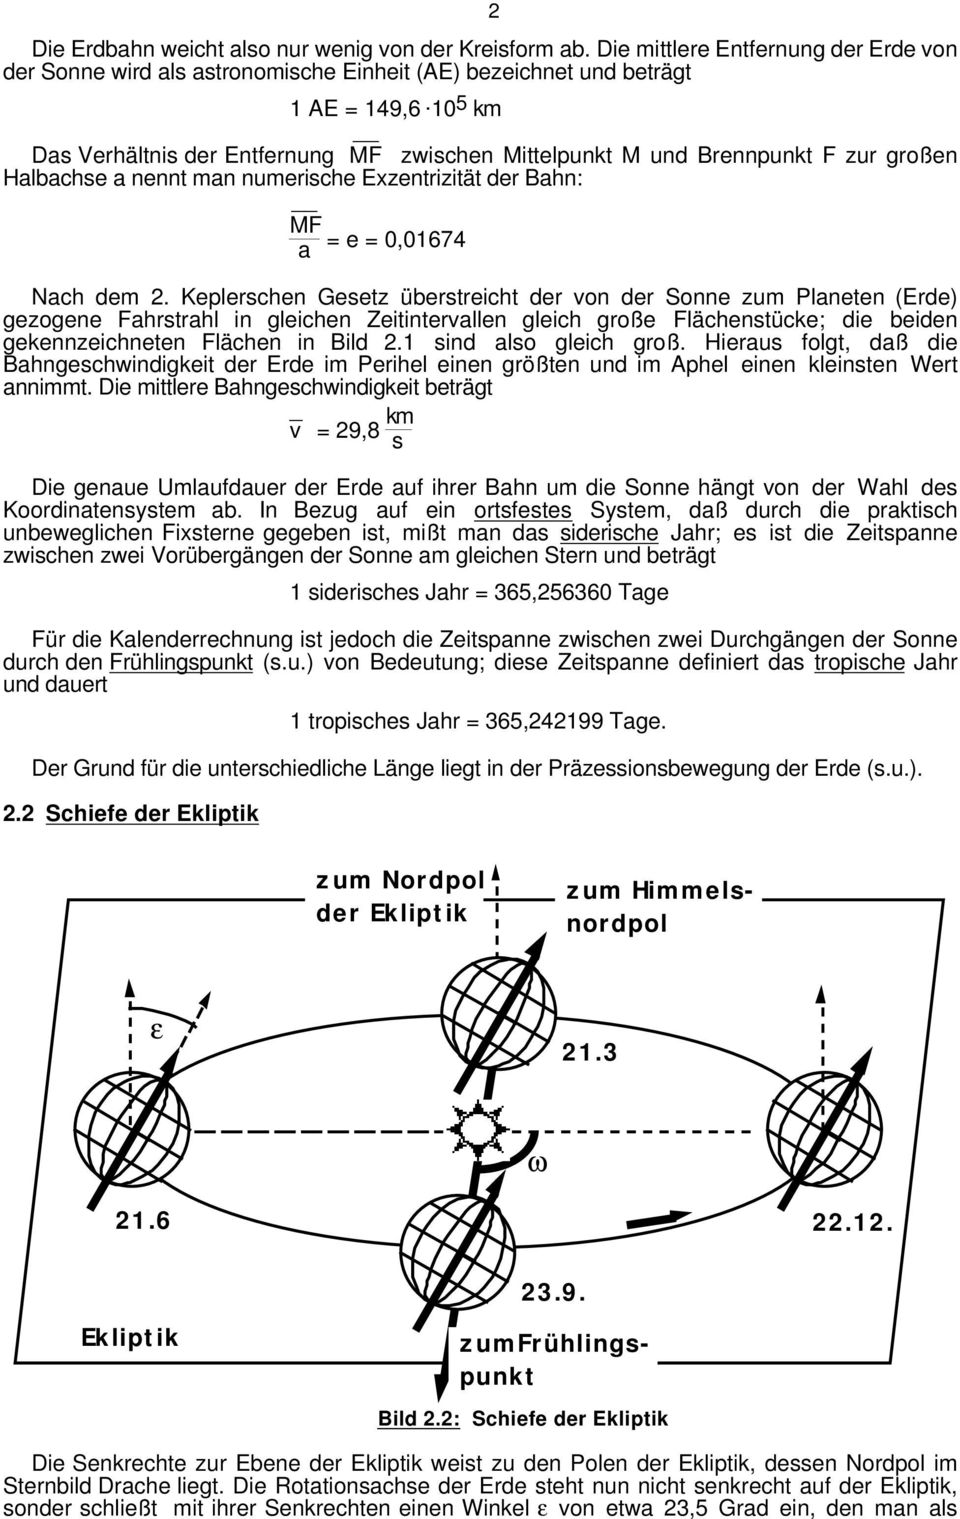 Keplerschen Gesetz überstreicht der von der Sonne zum Planeten (Erde) gezogene Fahrstrahl in gleichen Zeitintervallen gleich große Flächenstücke; die beiden gekennzeichneten Flächen in Bild 2.